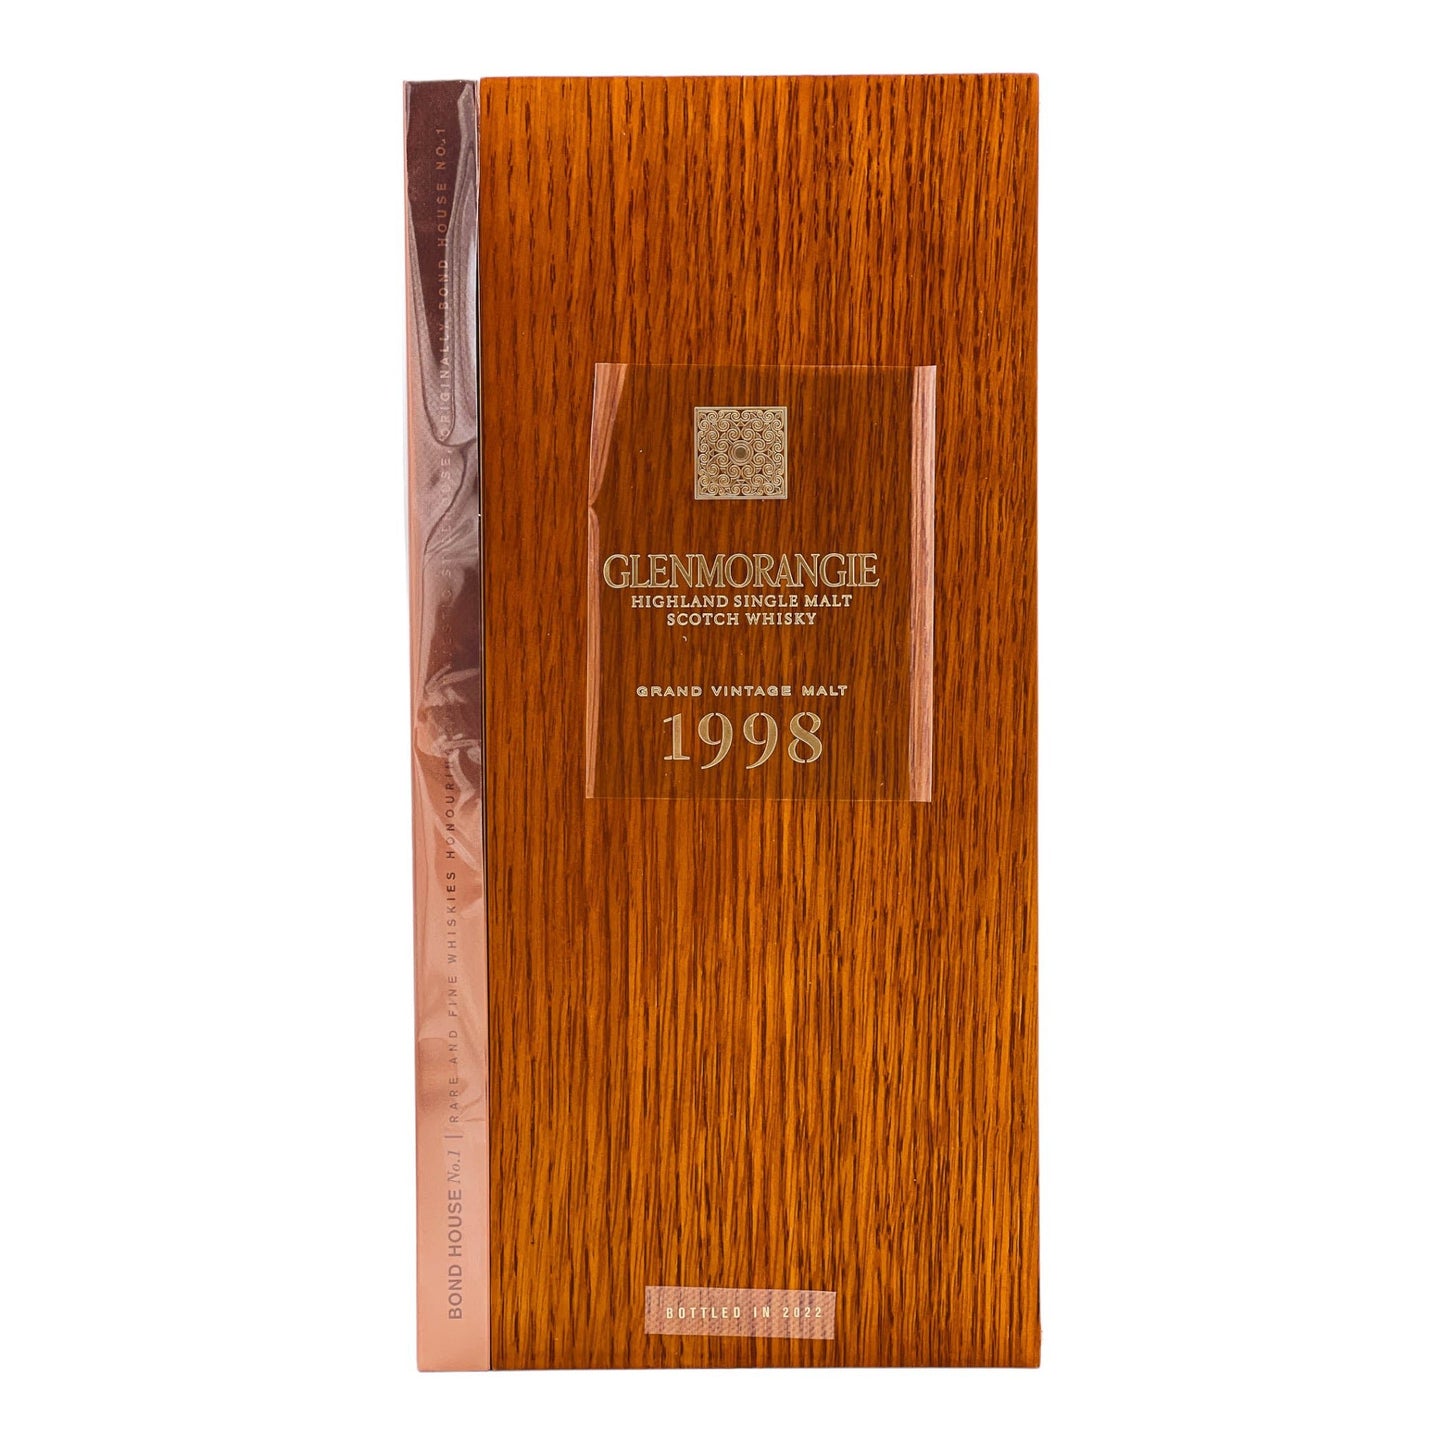 Glenmorangie | 23 Jahre | 1998 Grand Vintage Malt | Limited Release | 0,7l | 43%GET A BOTTLE